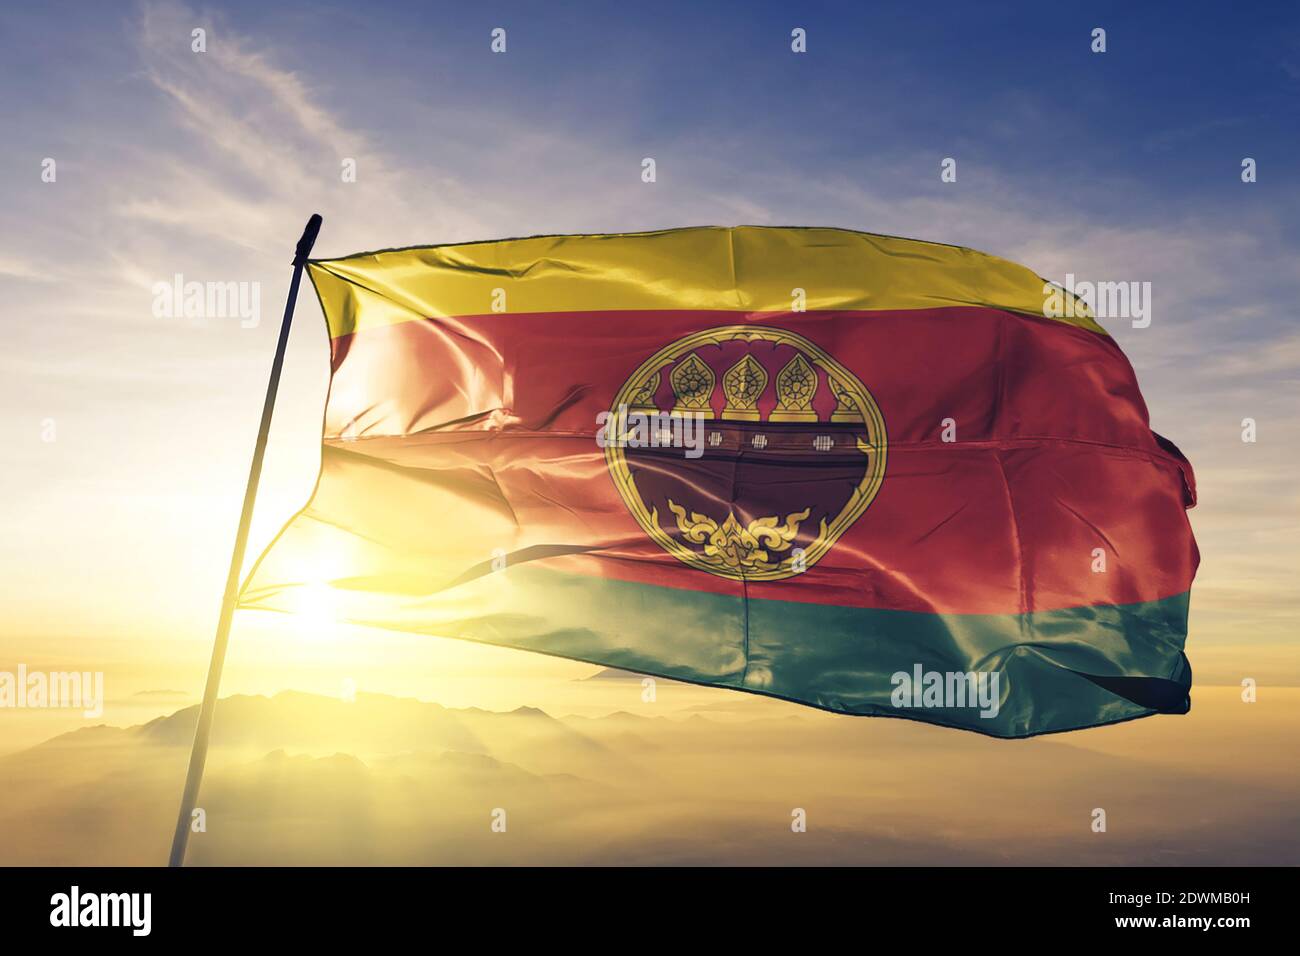 Kamphaeng Phet province de Thaïlande drapeau sur le dessus brume de lever de soleil Banque D'Images